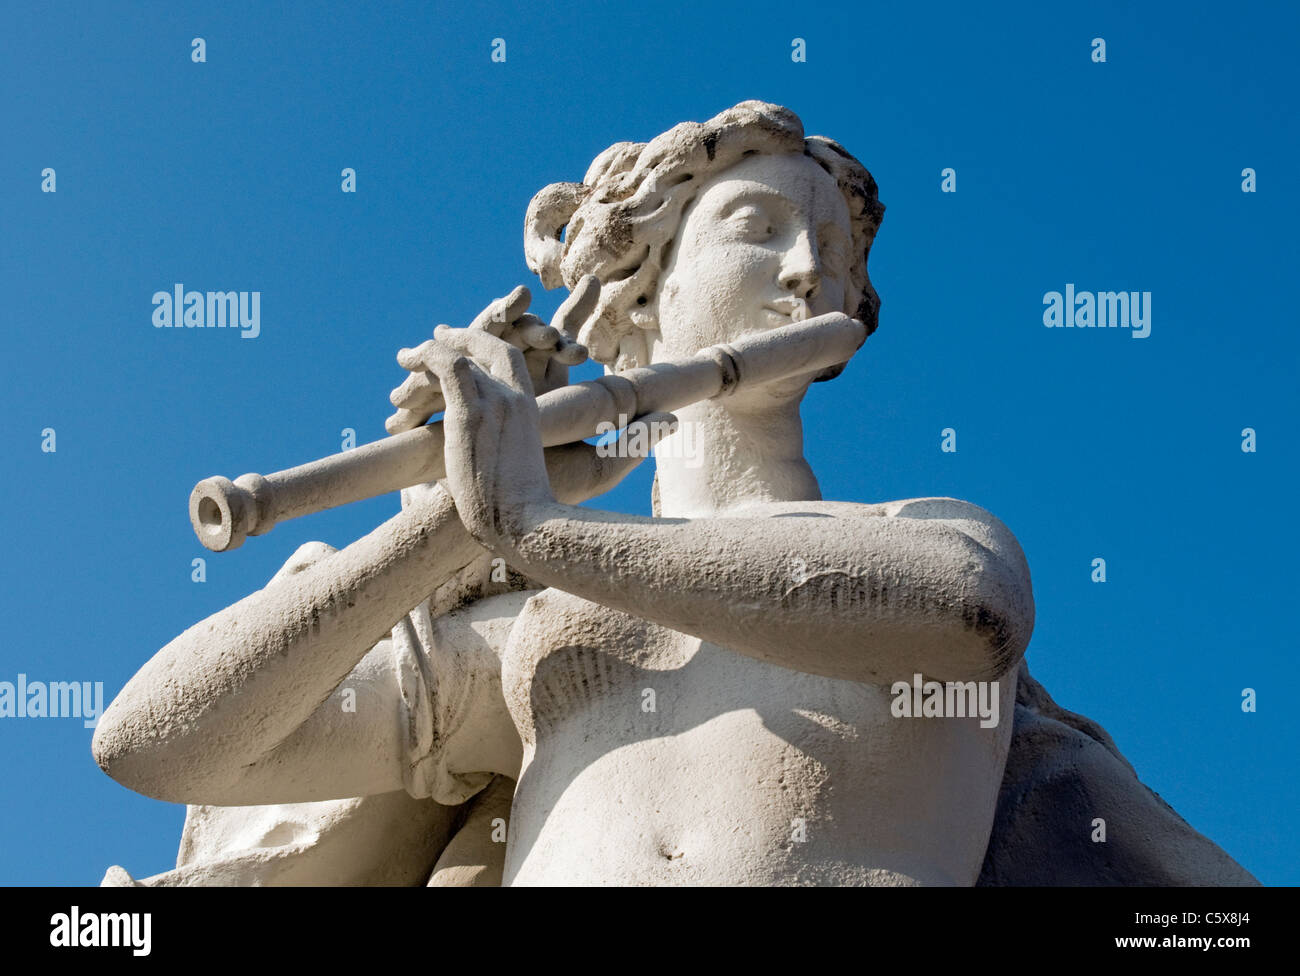 La sculpture baroque de joueur de flûte dans le parc du Palais du Belvédère, Vienne (Wien, Autriche) Banque D'Images